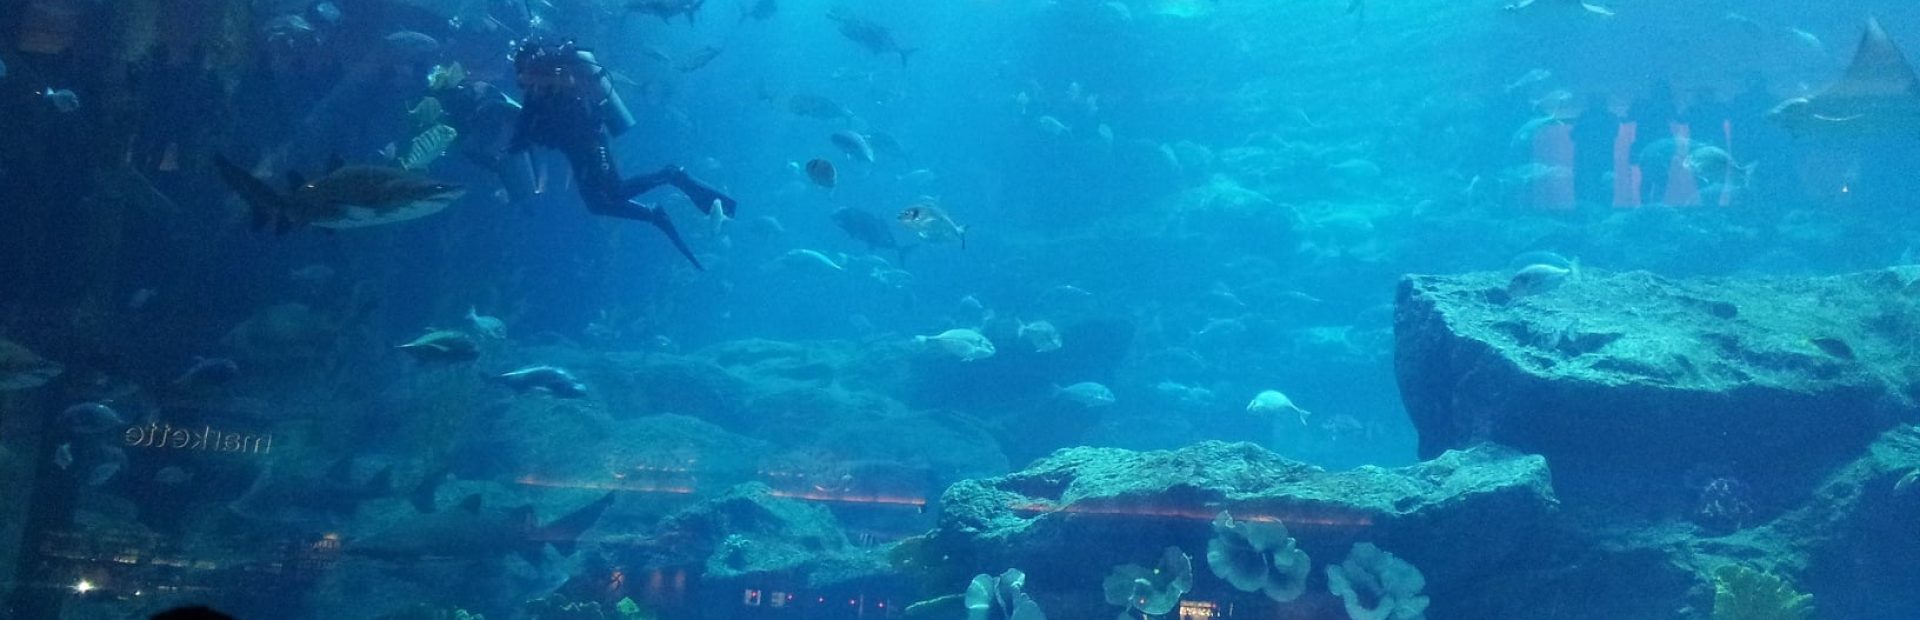 Dubai-travel-aquarium-Glimpses-of-The-World